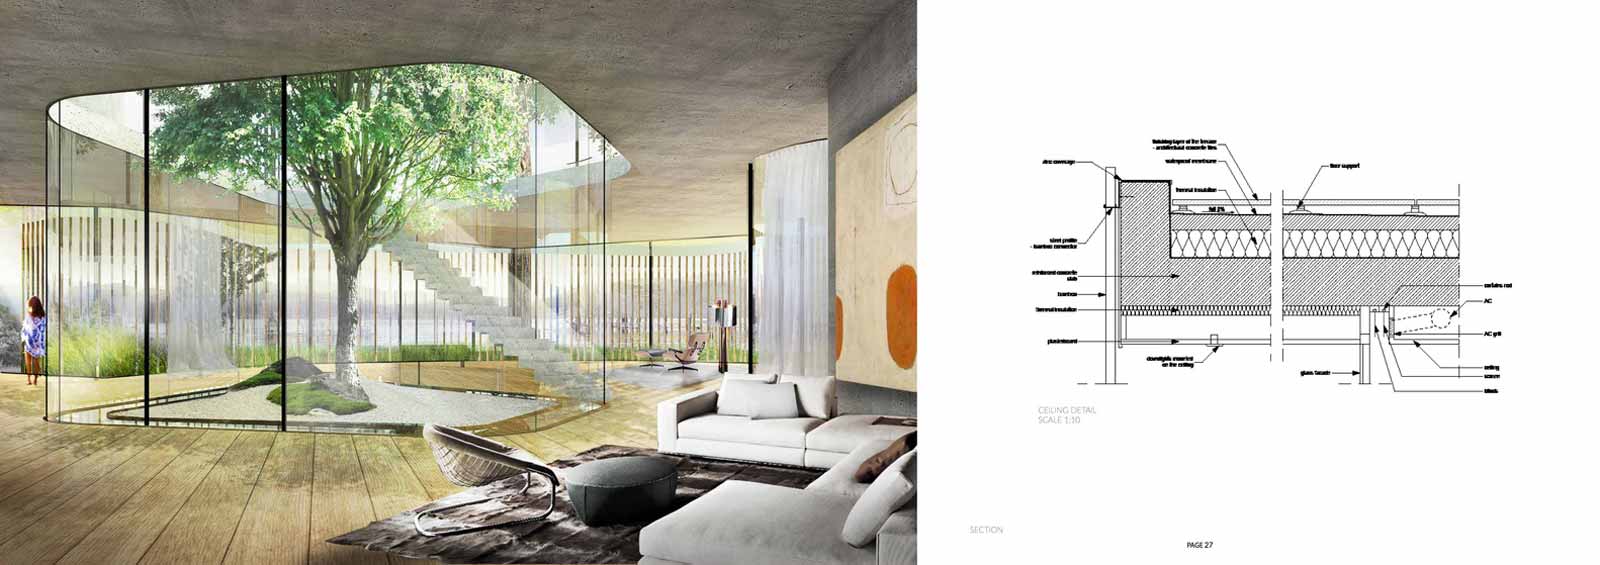   ویلا موسکا بیانکا - ویلا مدرن - گروه طراحی معماری و مهندسی آس دیزاین